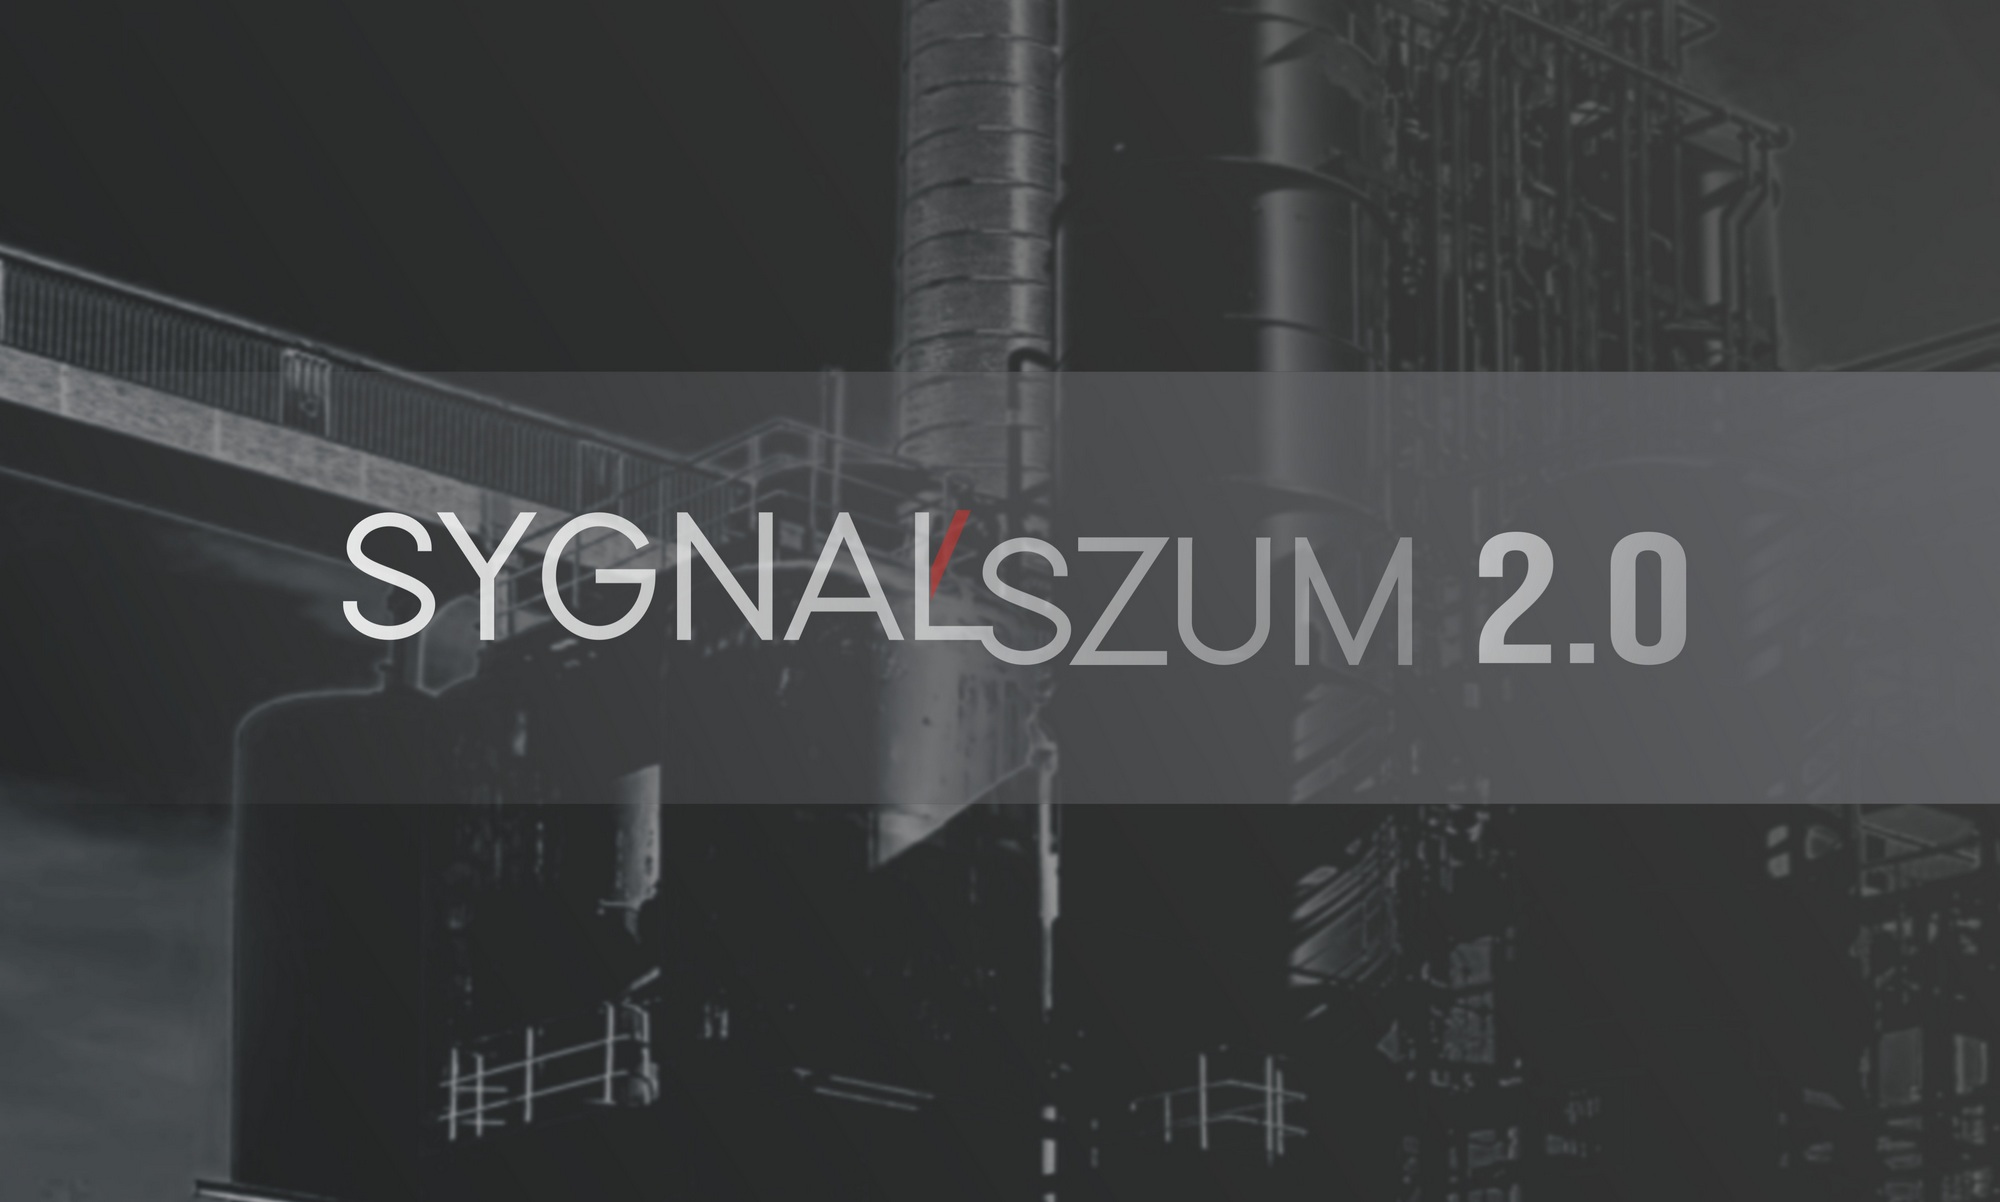 Sygnał/Szum 2.0: Radosław Kurzeja, Mazut, Palcolor na koncertach w Płocku